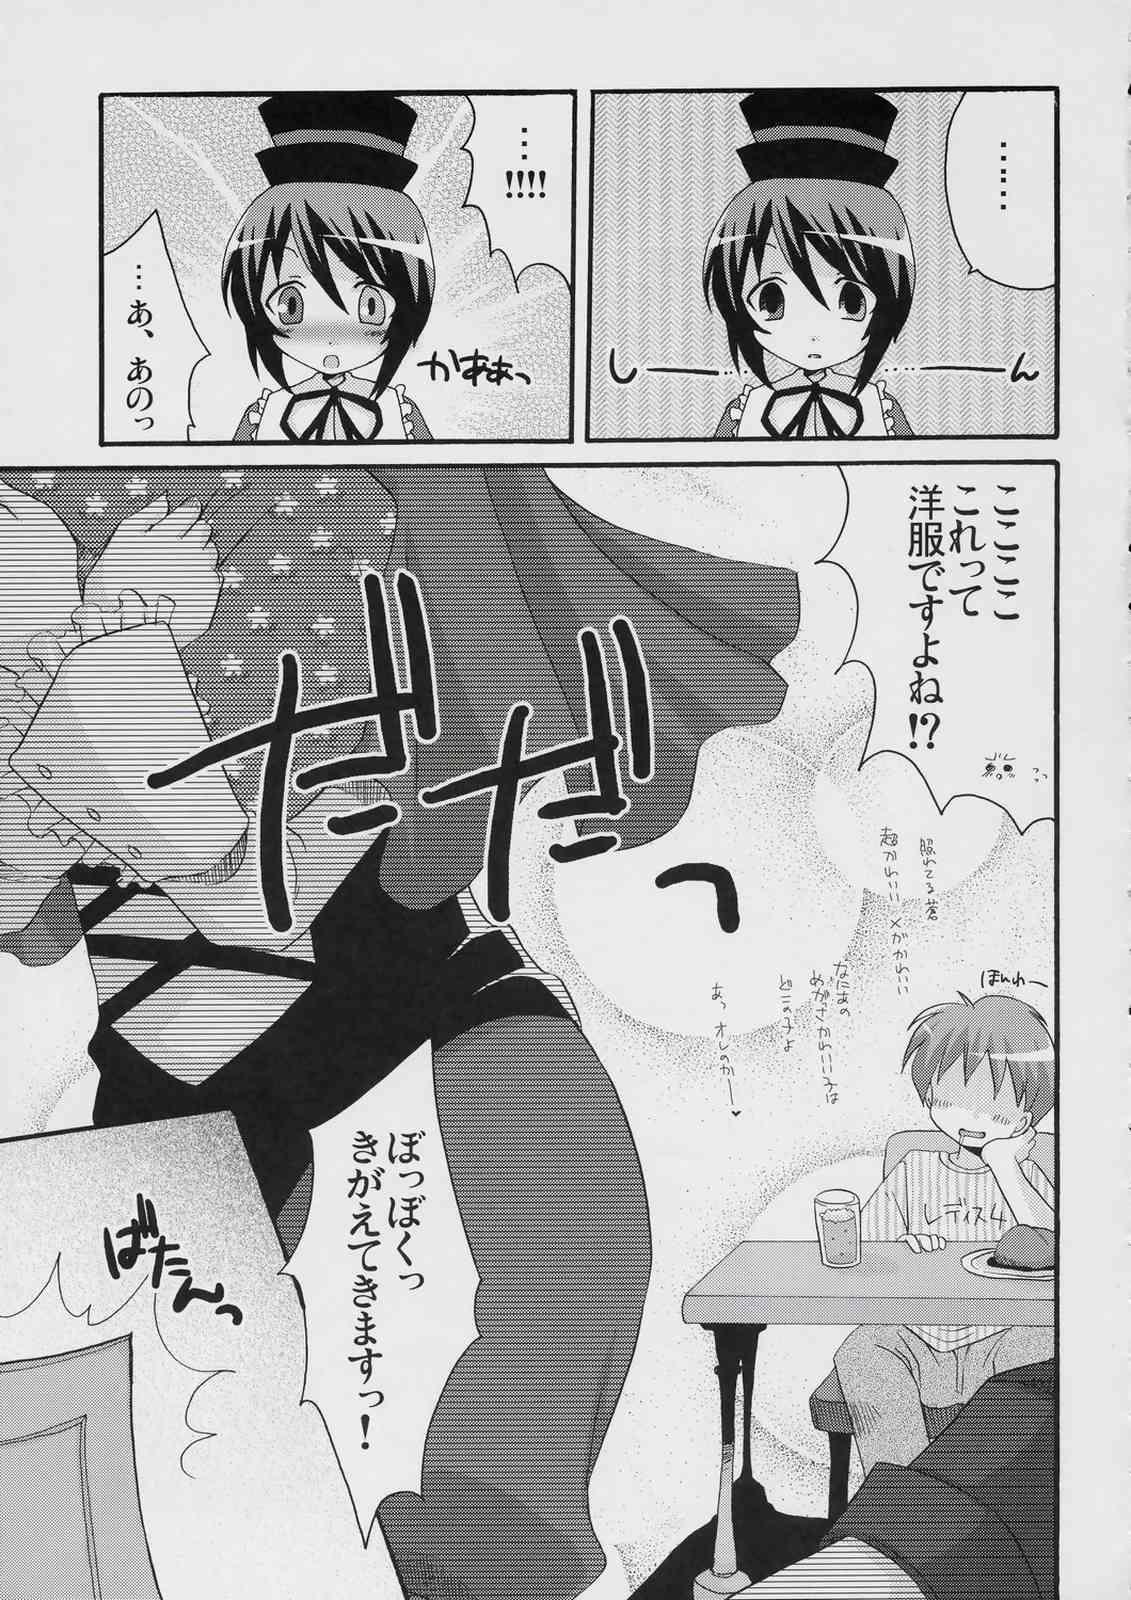 Story Boku to ao to no nichijou - Rozen maiden Tinytits - Page 8